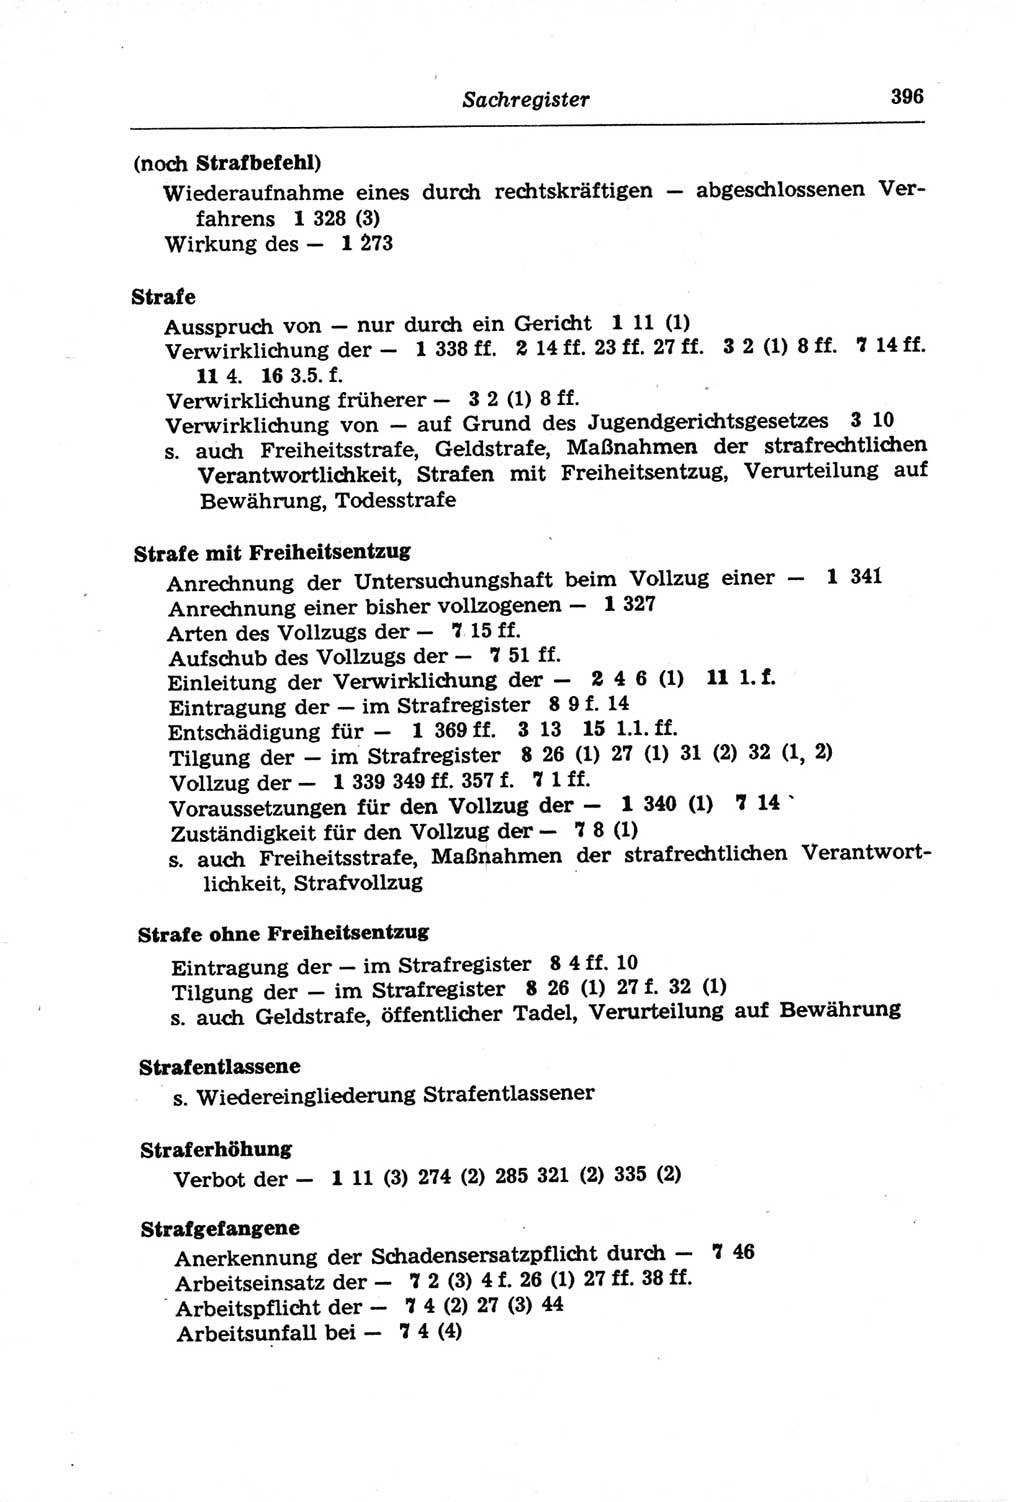 Strafprozeßordnung (StPO) der Deutschen Demokratischen Republik (DDR) und angrenzende Gesetze und Bestimmungen 1968, Seite 396 (StPO Ges. Bstgn. DDR 1968, S. 396)